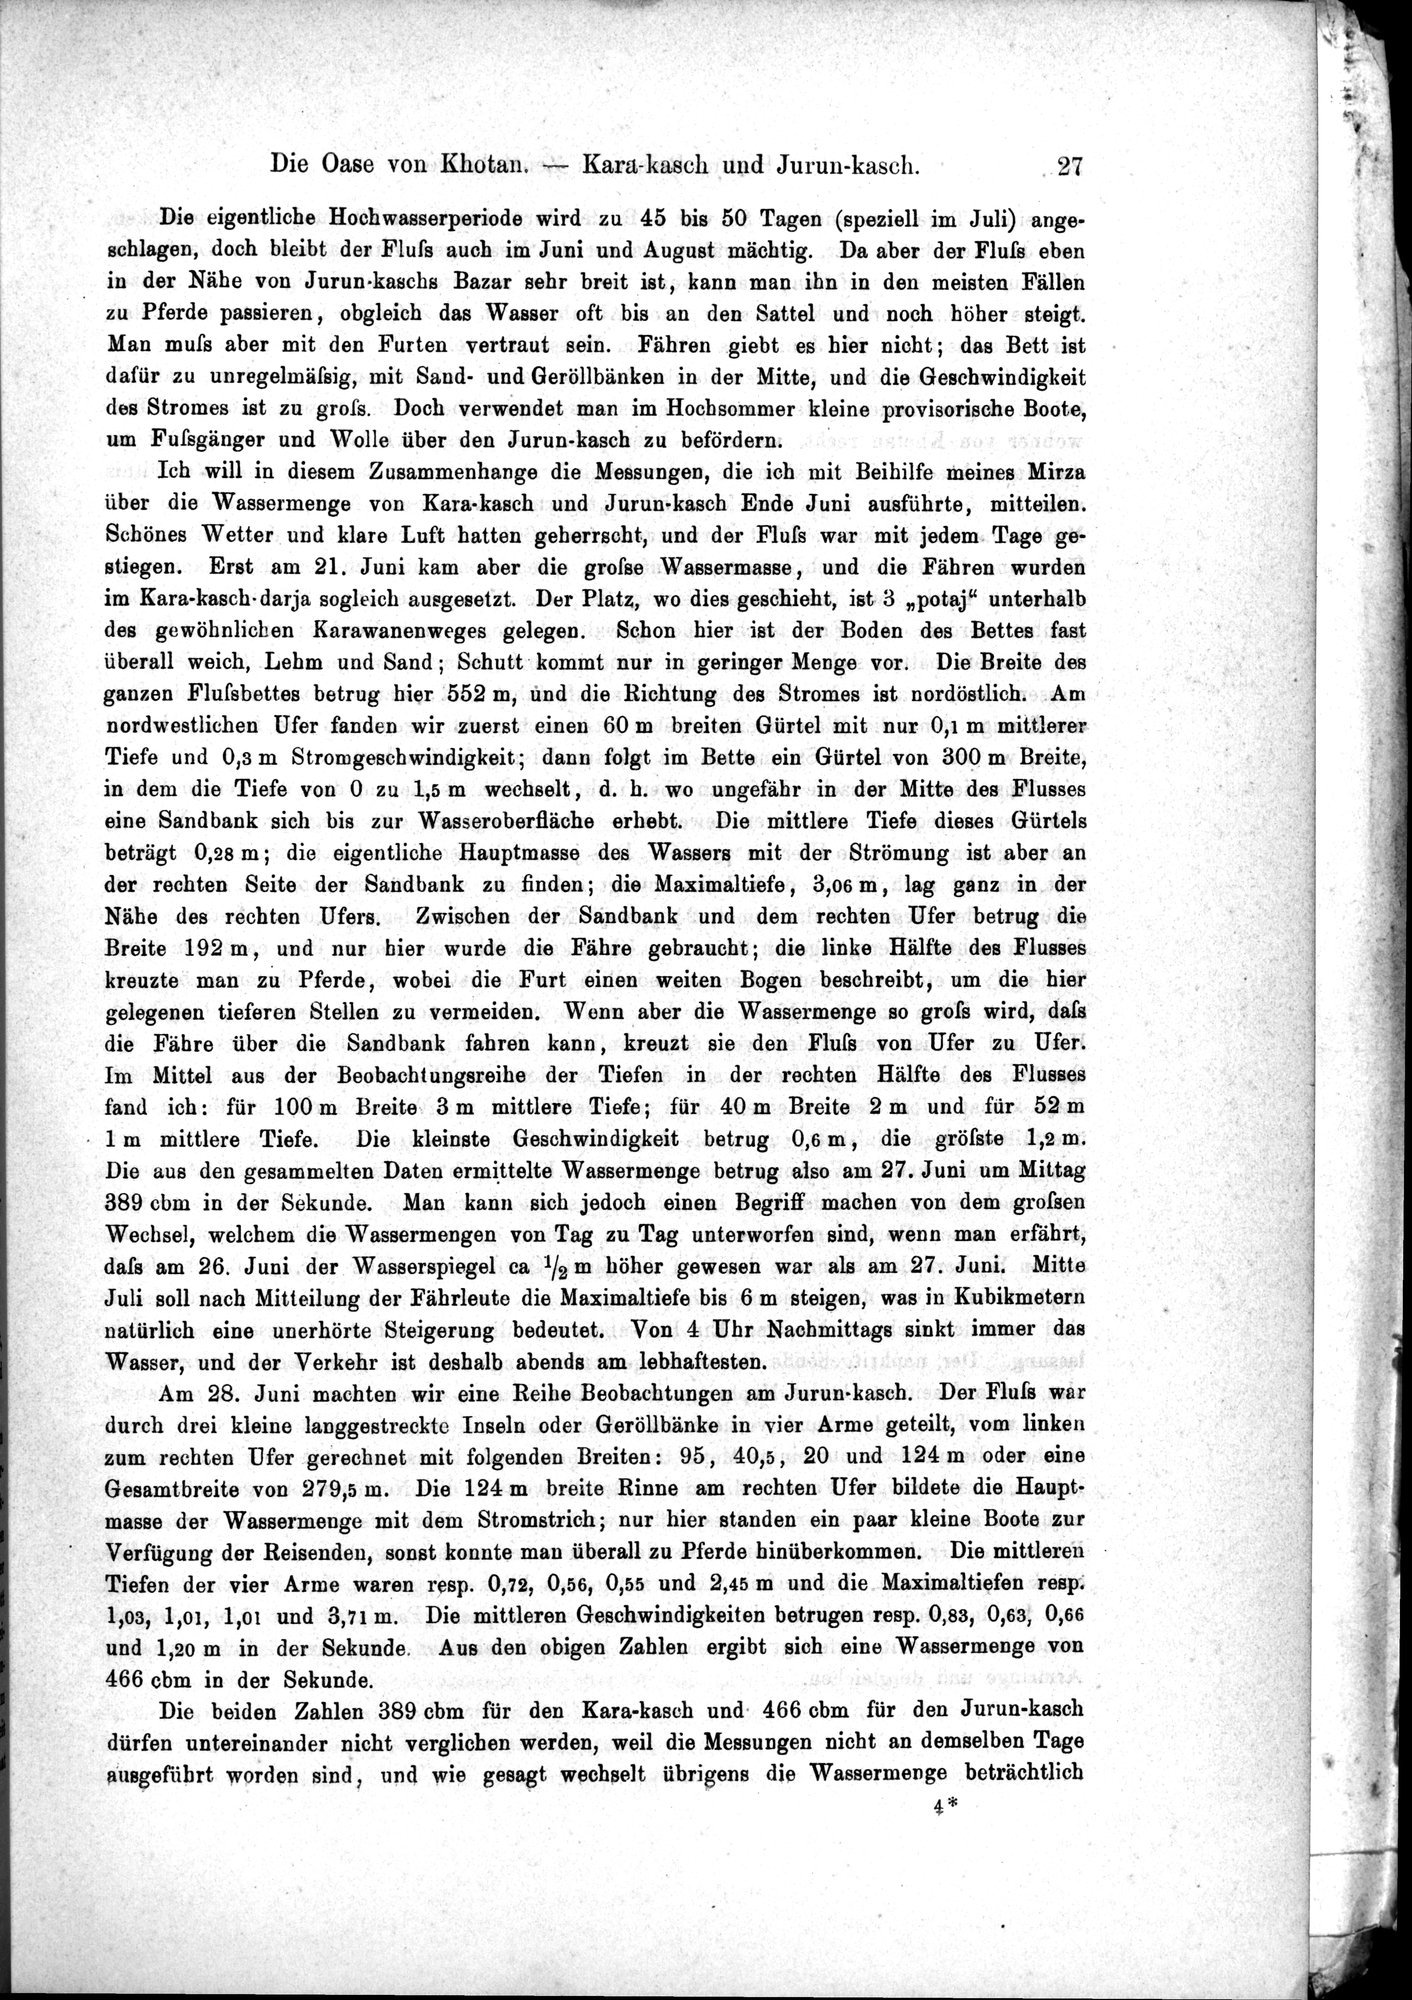 Die Geographische-Wissenschaftlichen Ergebnisse meiner Reisen in Zentralasien, 1894-1897 : vol.1 / Page 39 (Grayscale High Resolution Image)